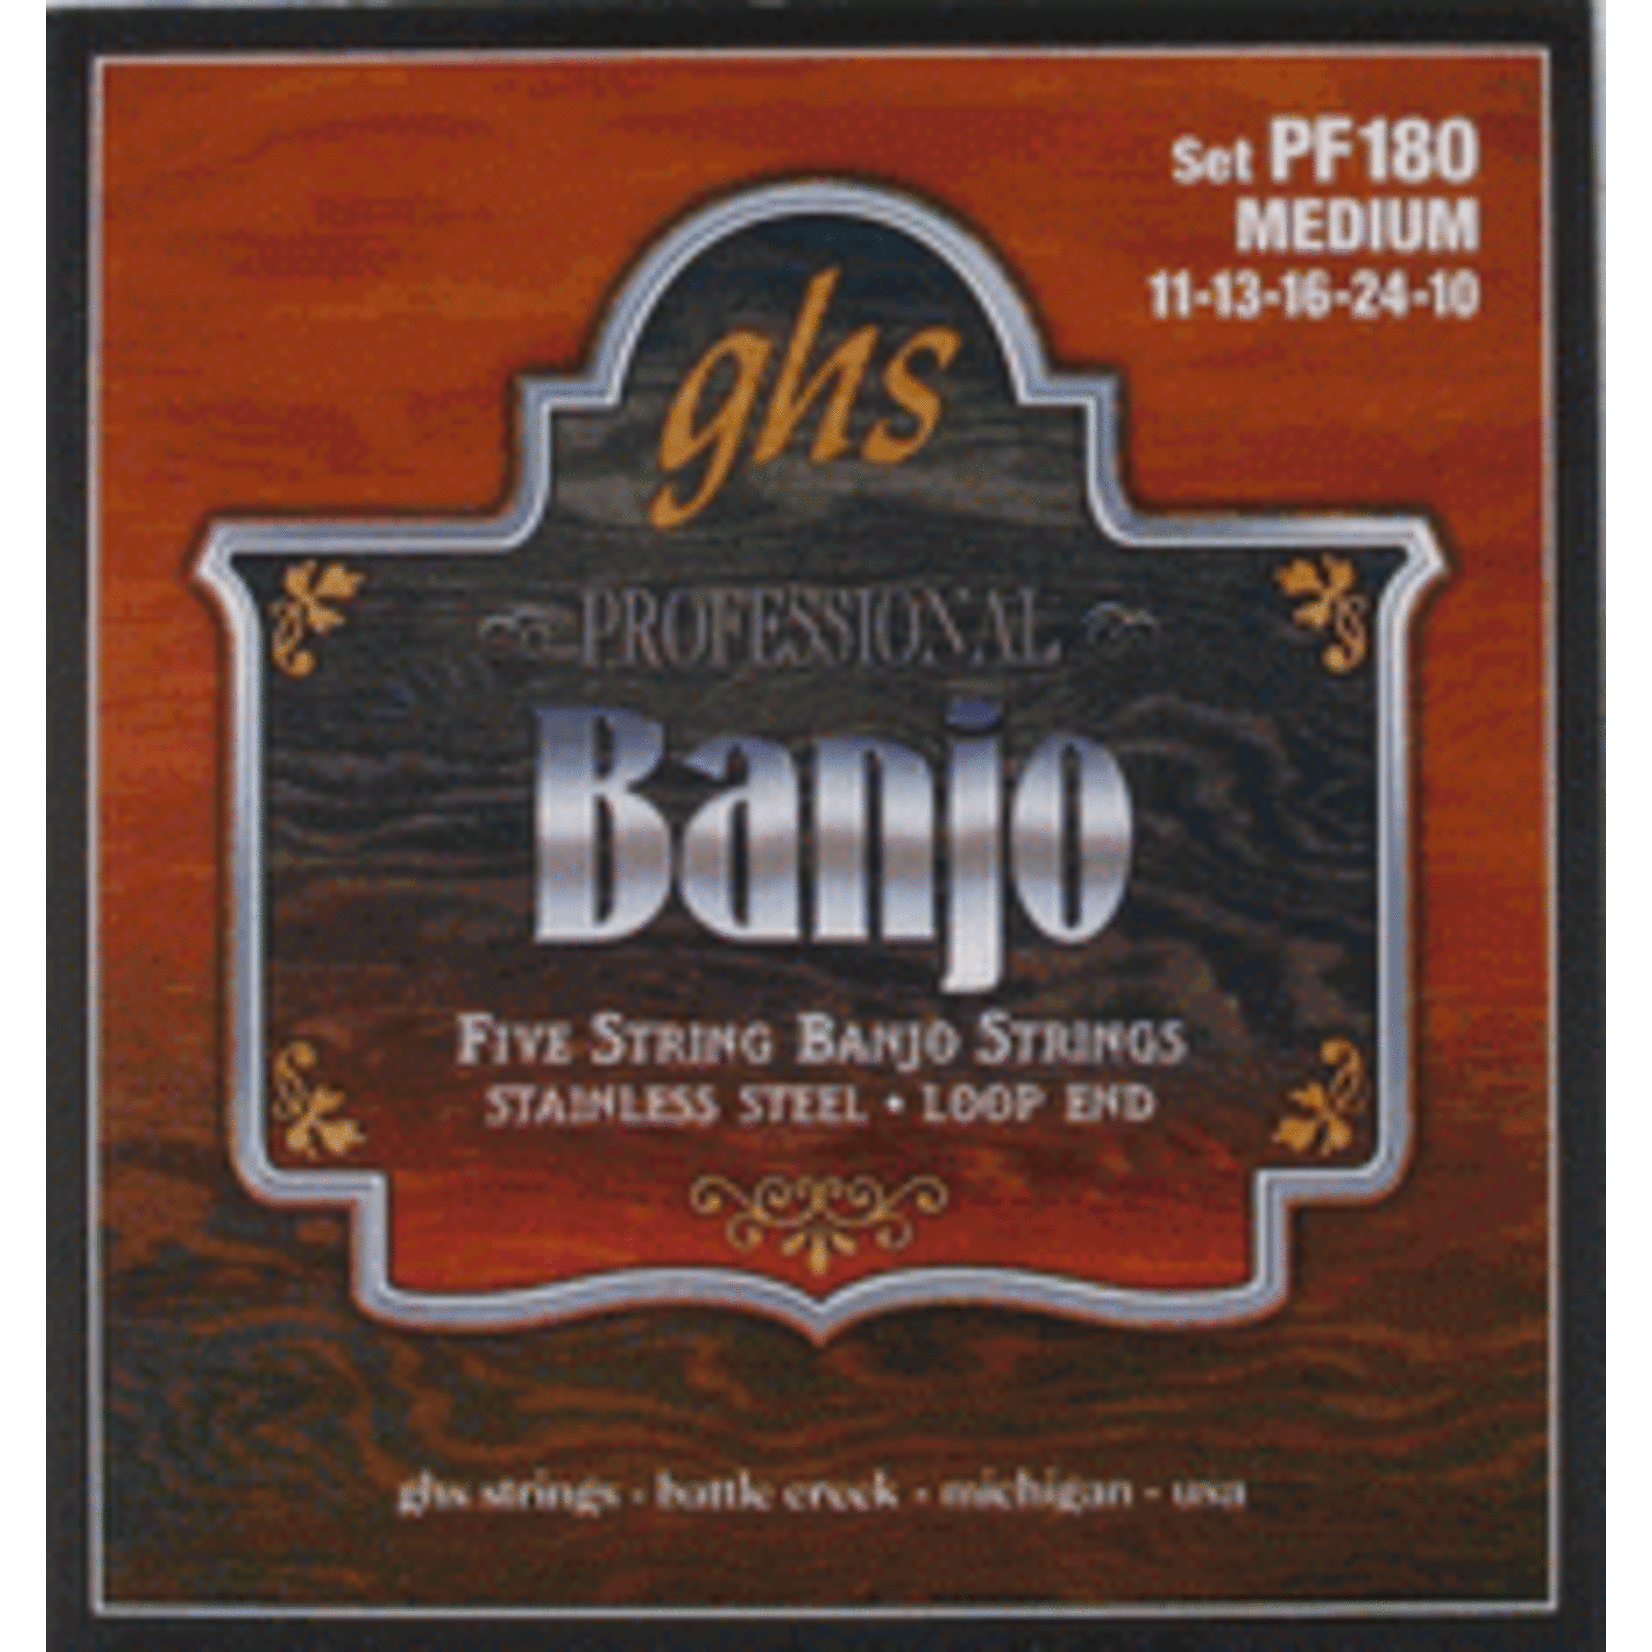 GHS GHS PF180 Stainless Steel Loop End 5 String Banjo Strings Medium